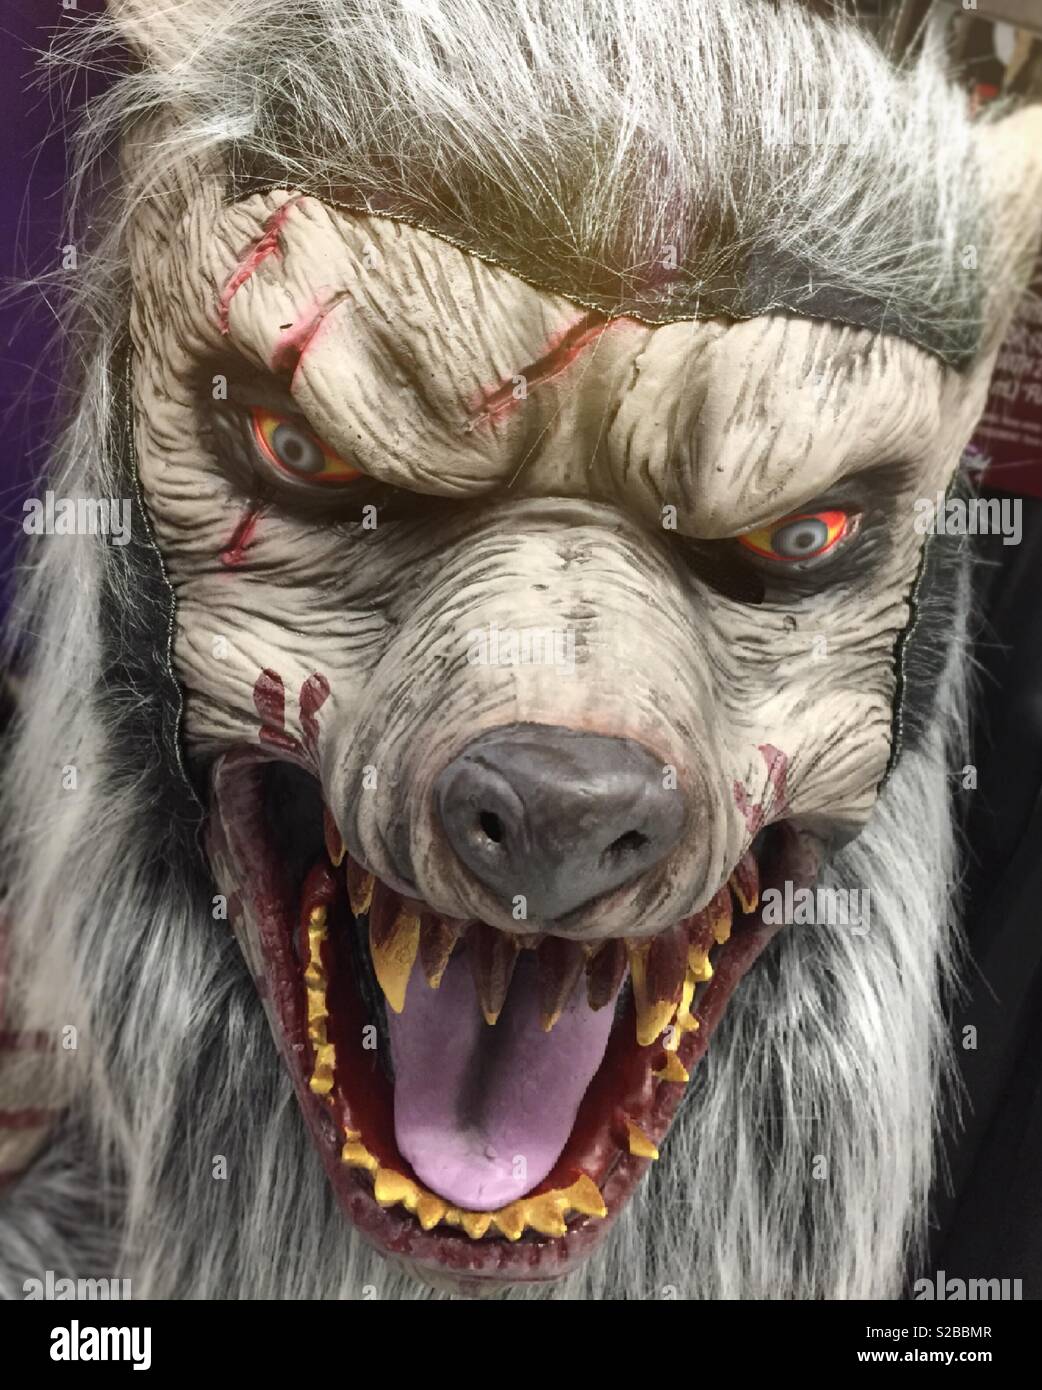 Werwolf Maske für Halloween, USA Stockfotografie - Alamy